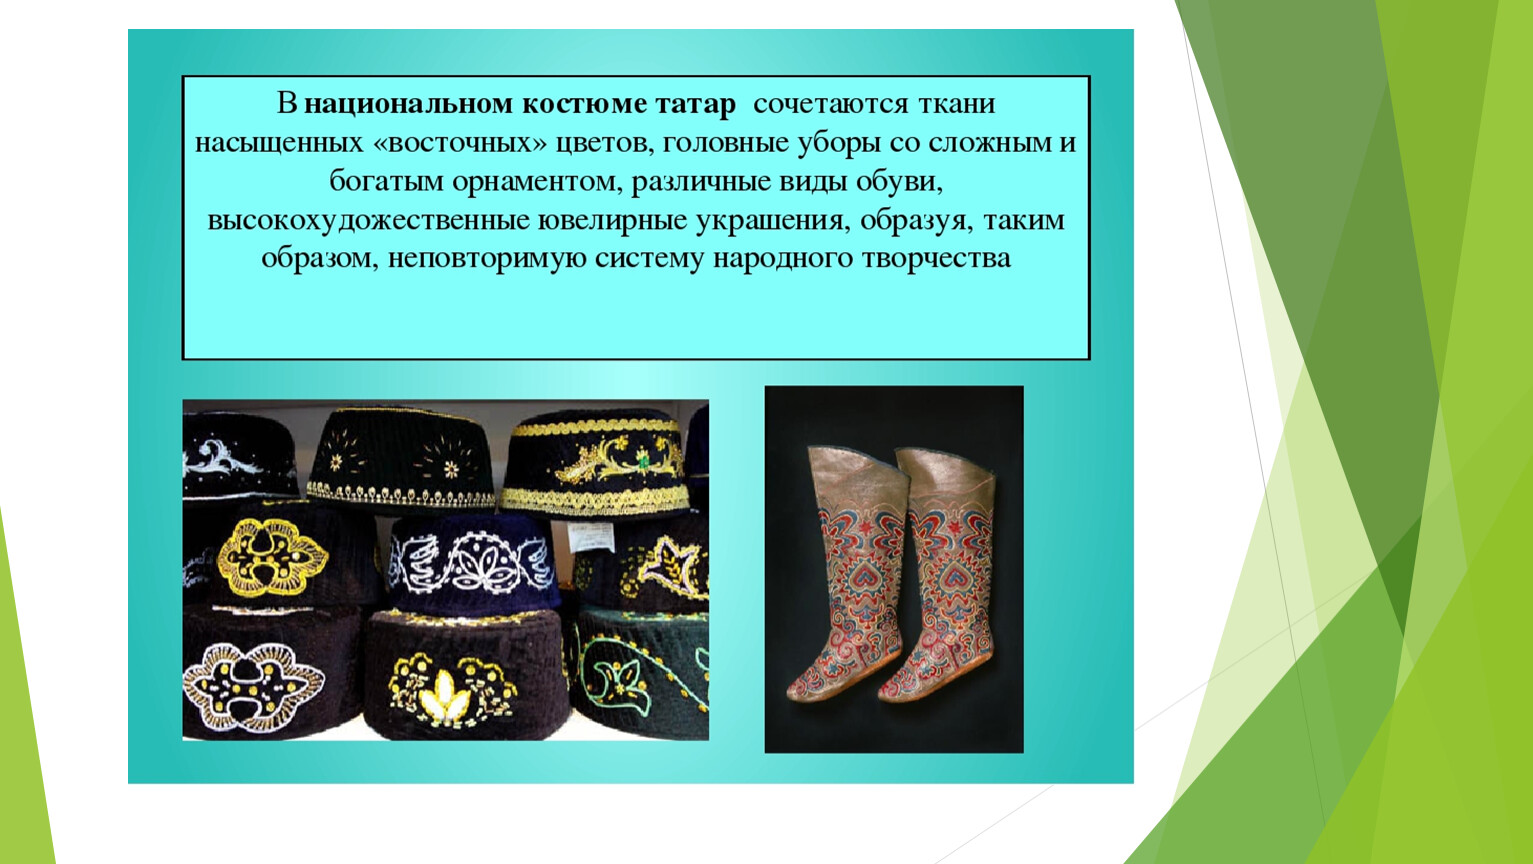 Татарский национальный костюм презентация